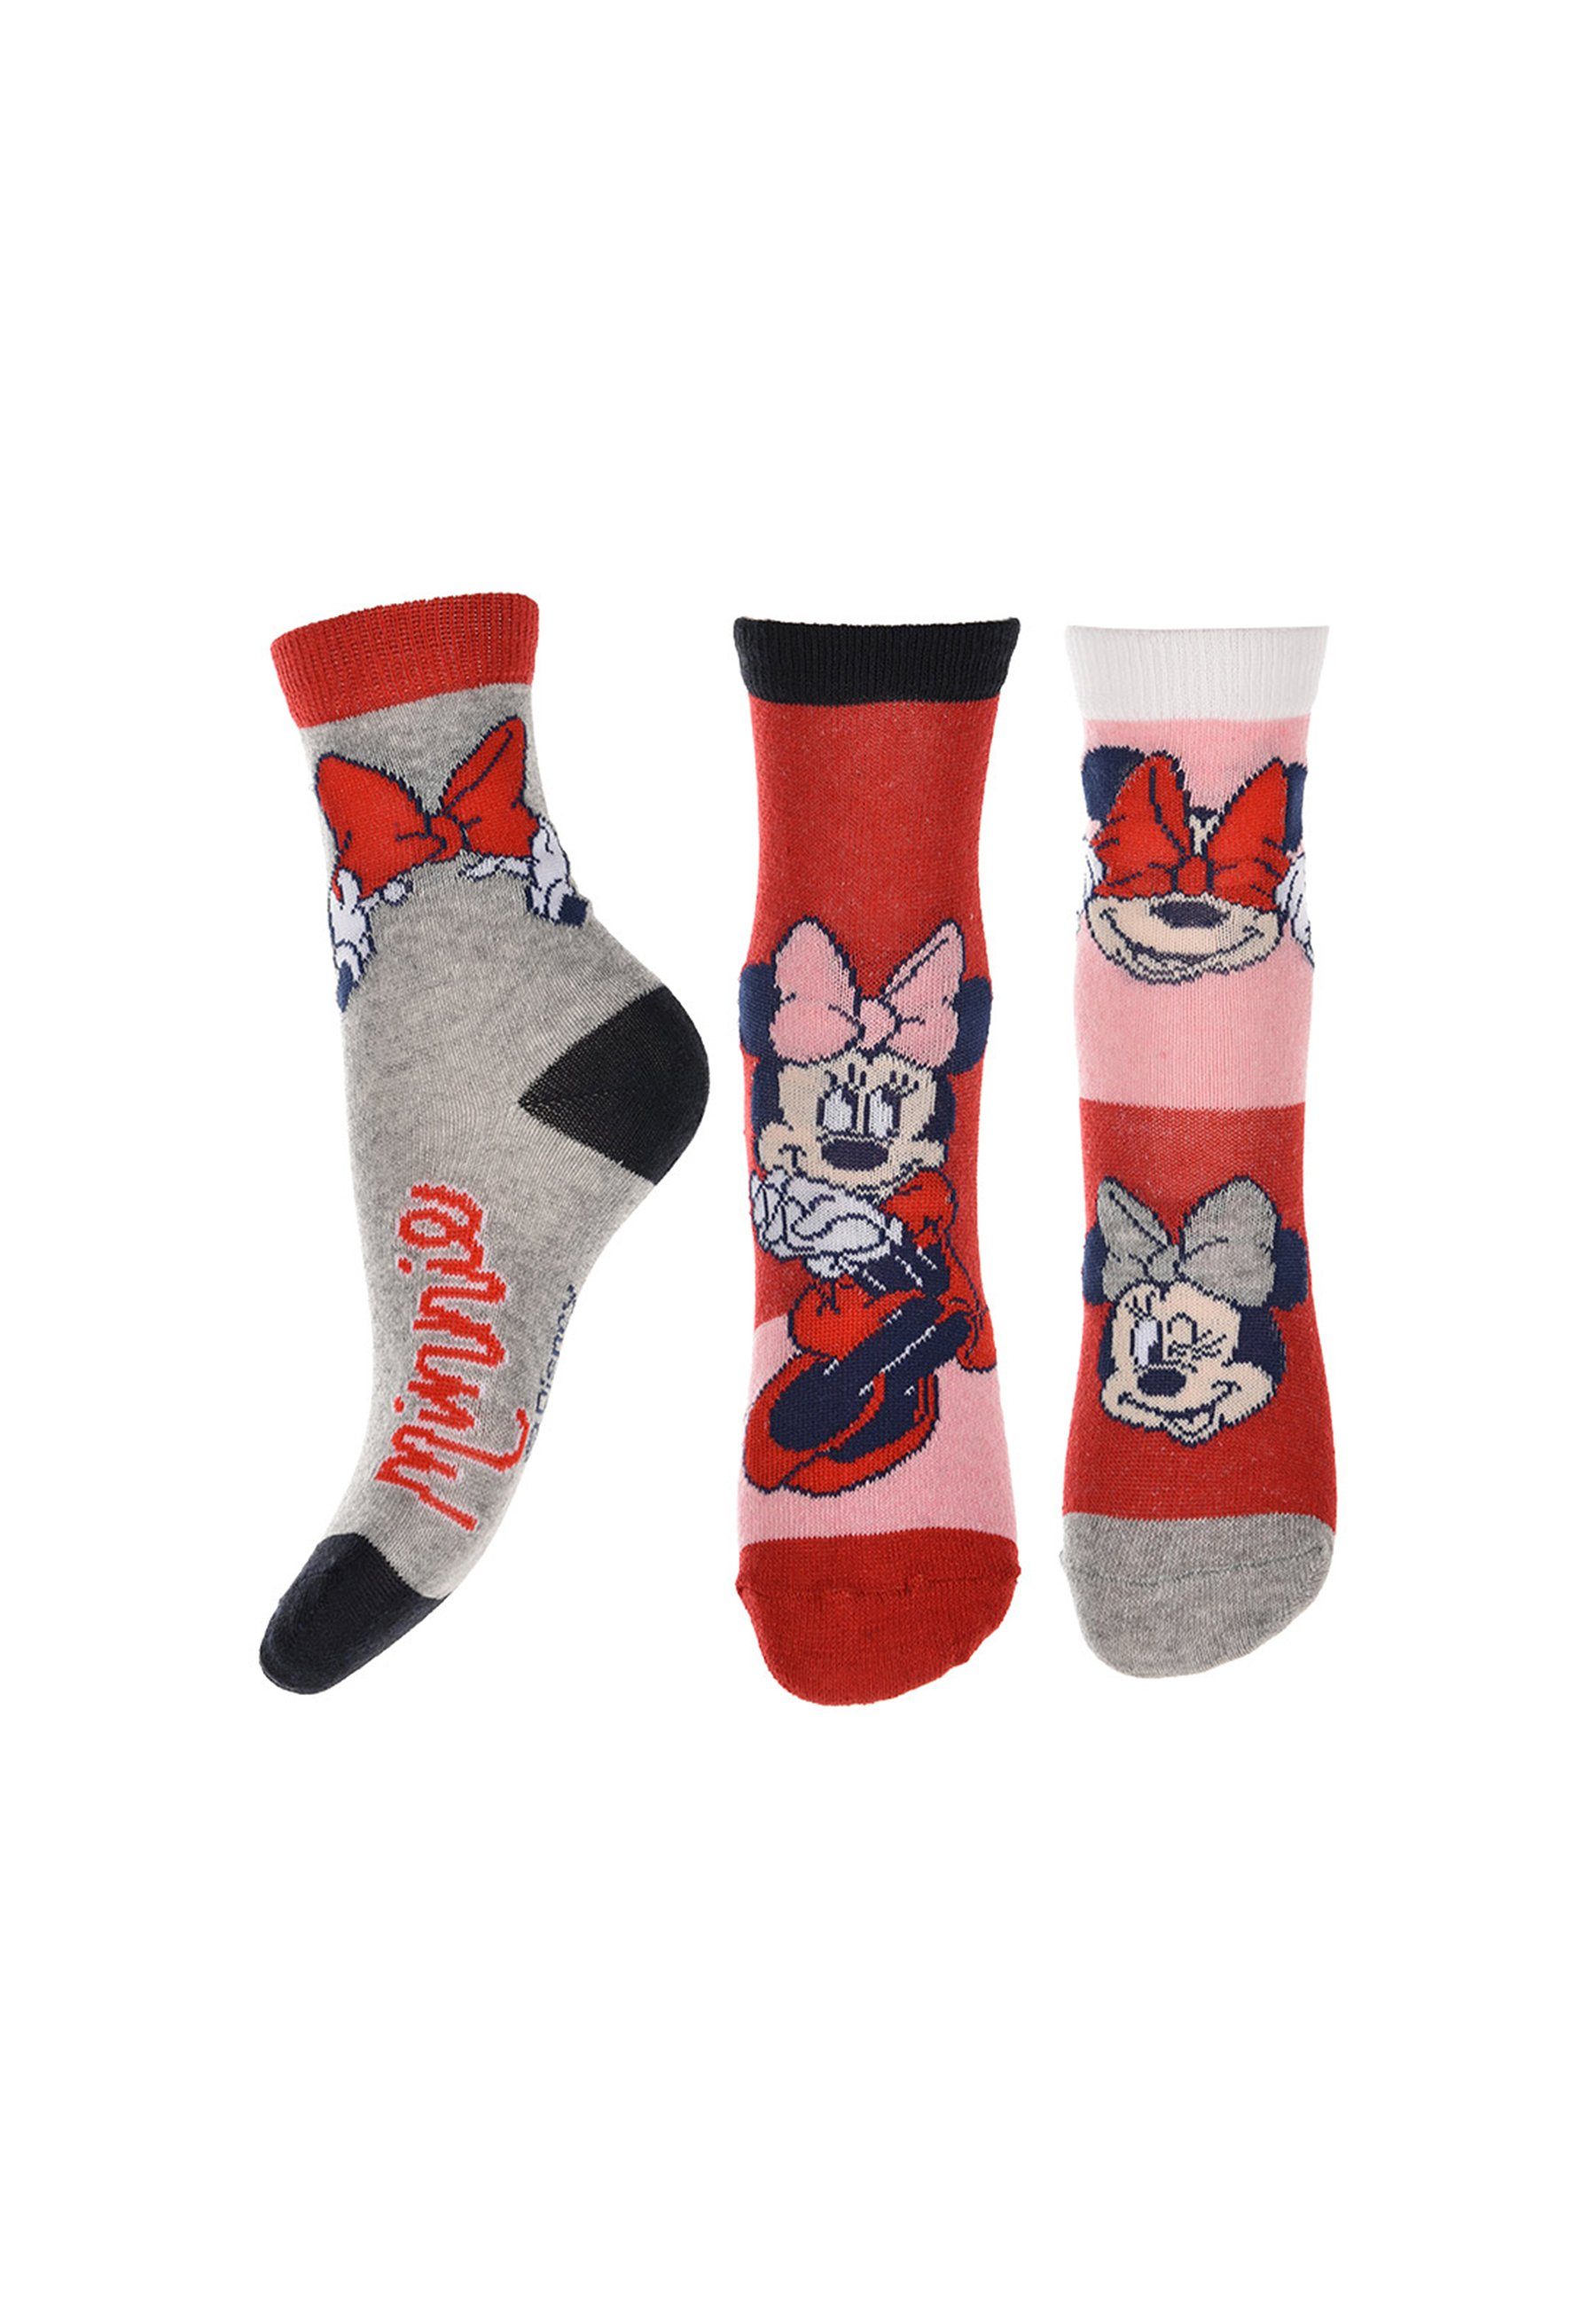 Disney Minnie Mouse Socken Minnie Kinder Mädchen Socken Strümpfe